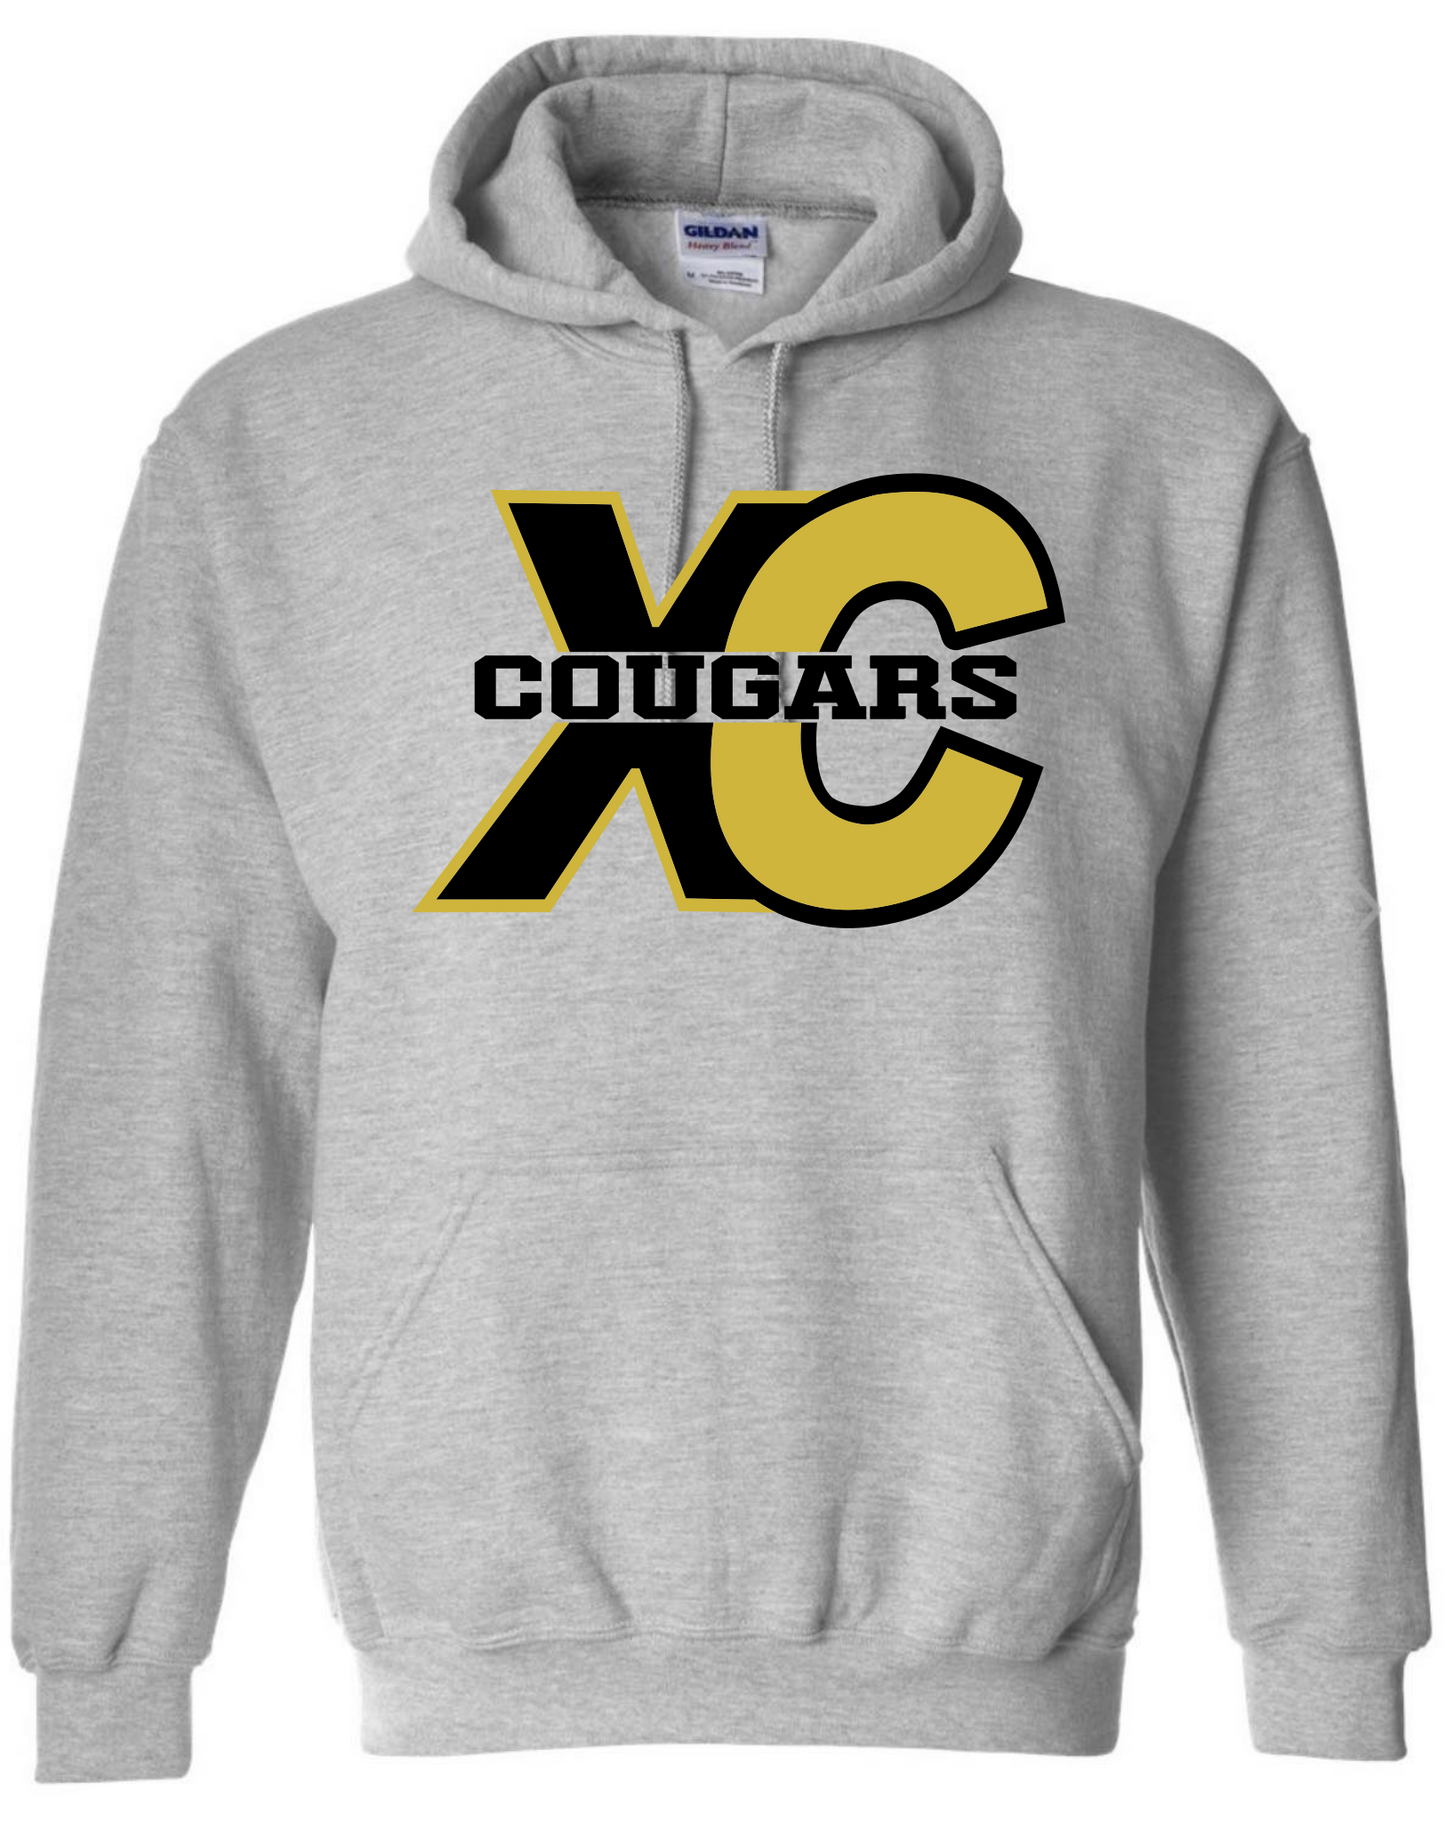 XC Cougars Hoodie